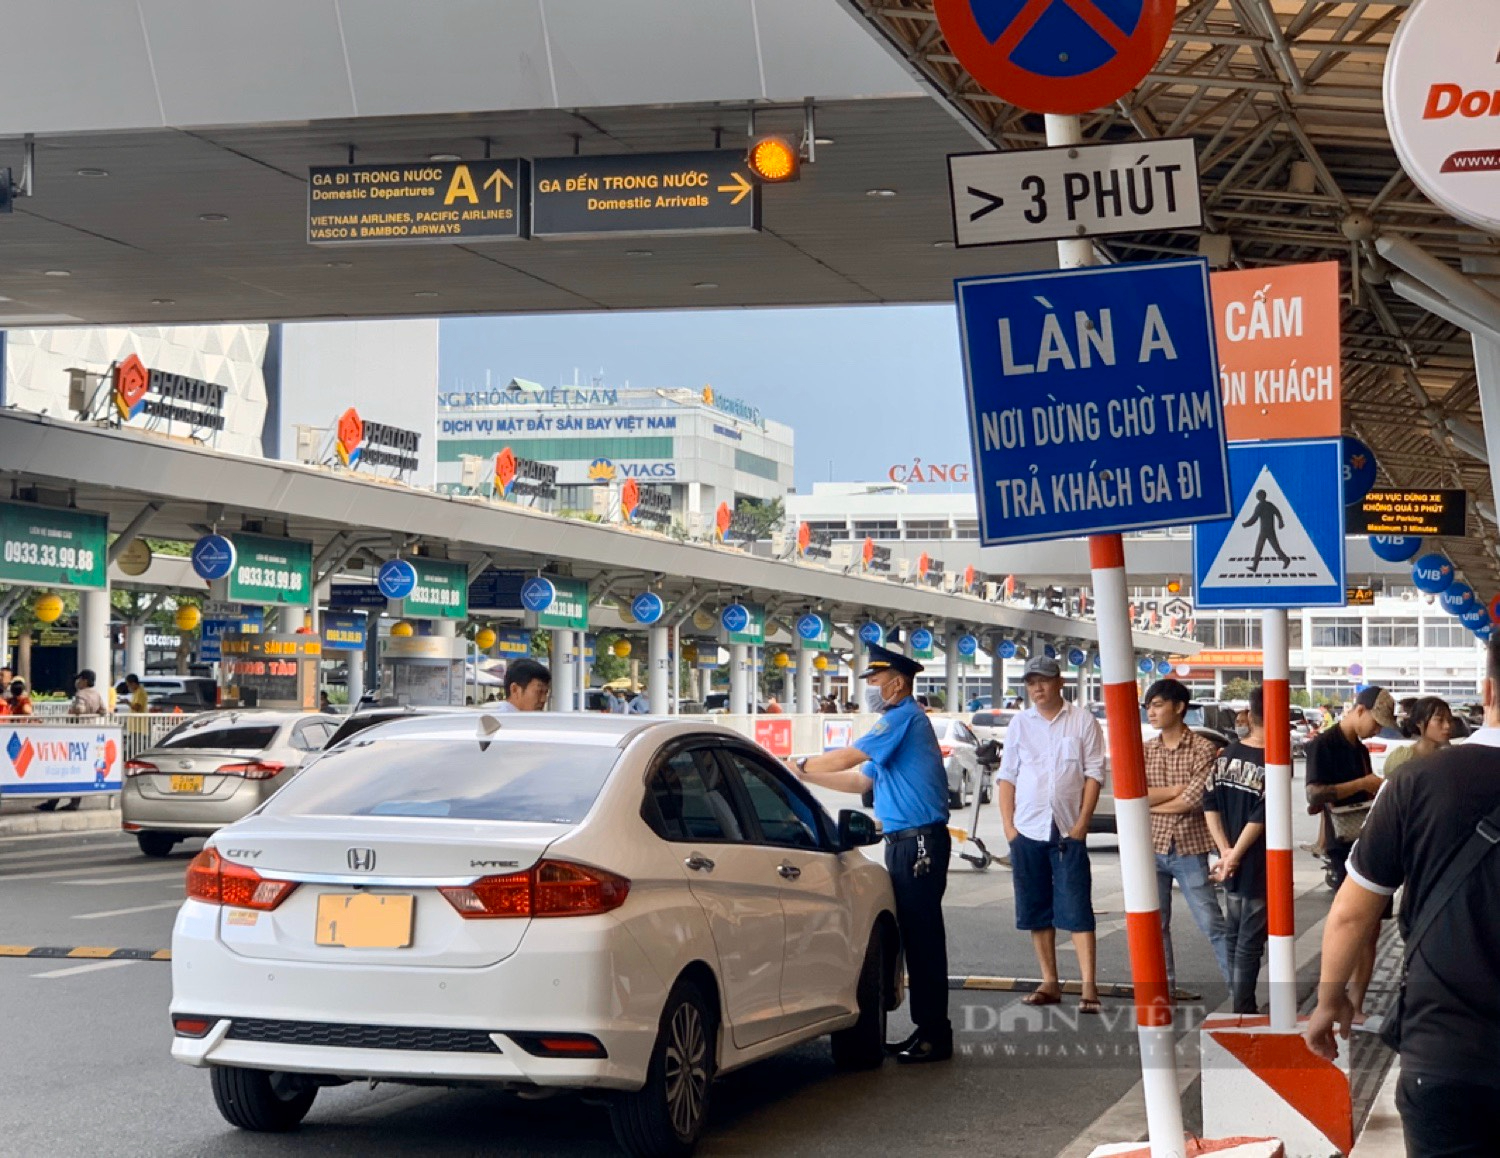 Thanh tra giao thông &quot;siết&quot; vi phạm tại sân bay Tân Sơn Nhất - Ảnh 1.